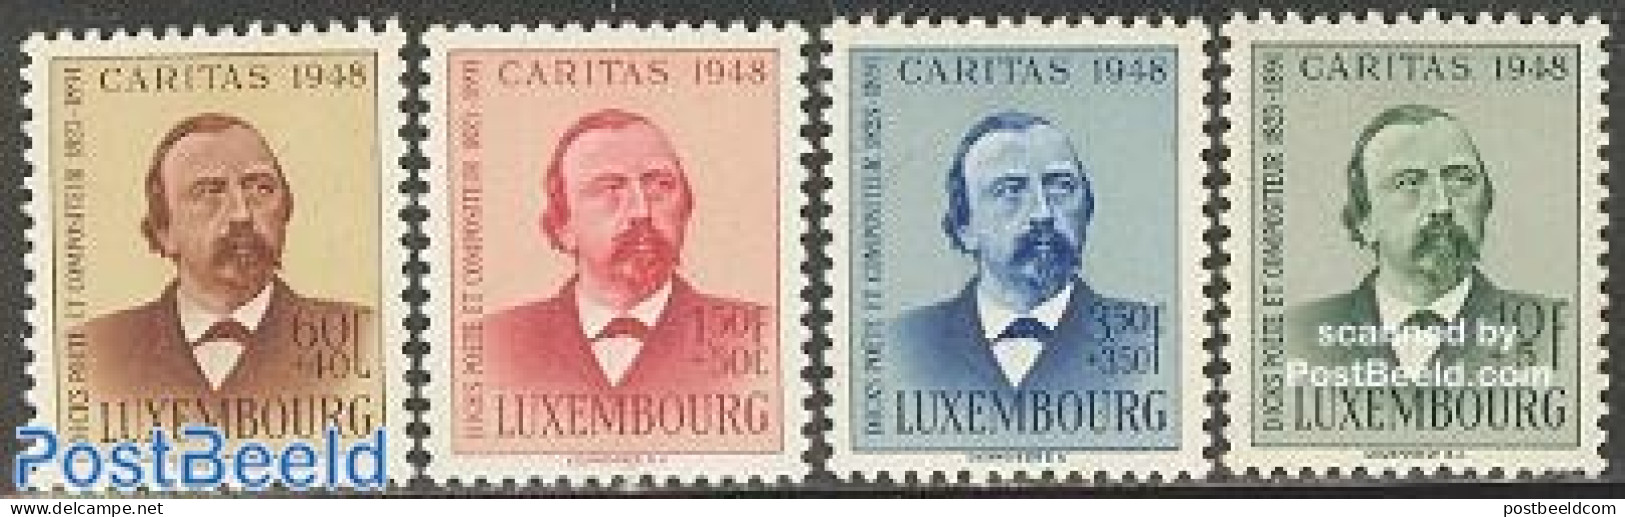 Luxemburg 1948 Caritas, Dicks 4v, Unused (hinged), Performance Art - Music - Art - Authors - Unused Stamps